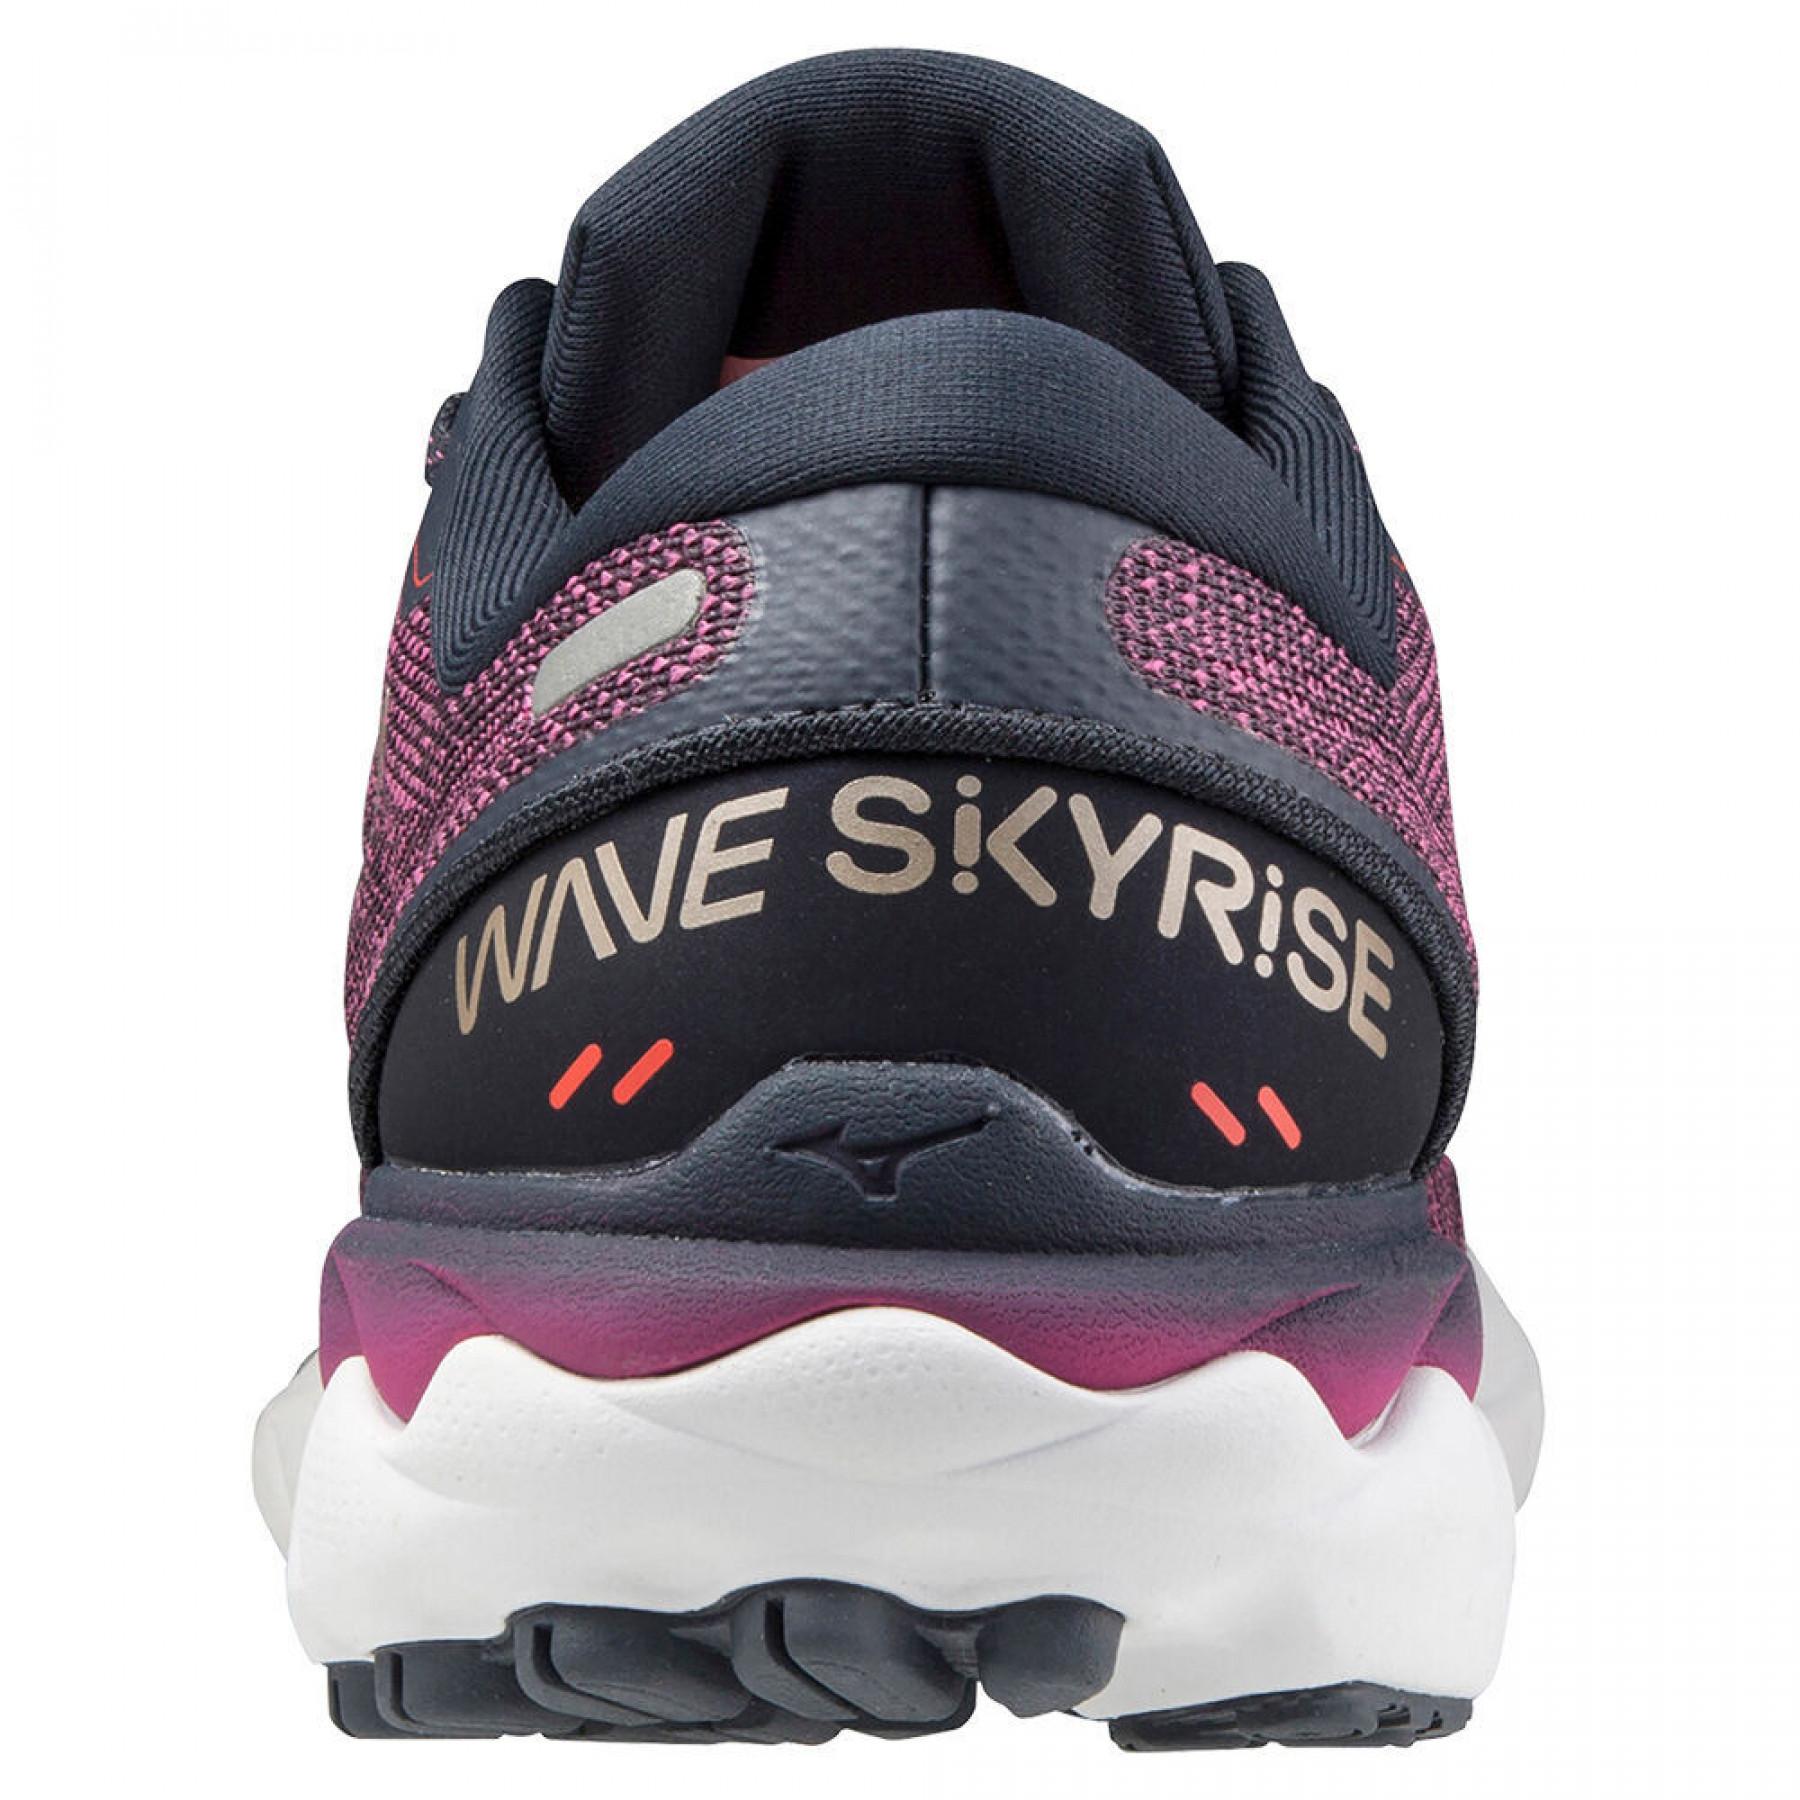 Schuhe für Frauen Mizuno Wave Skyrise 2